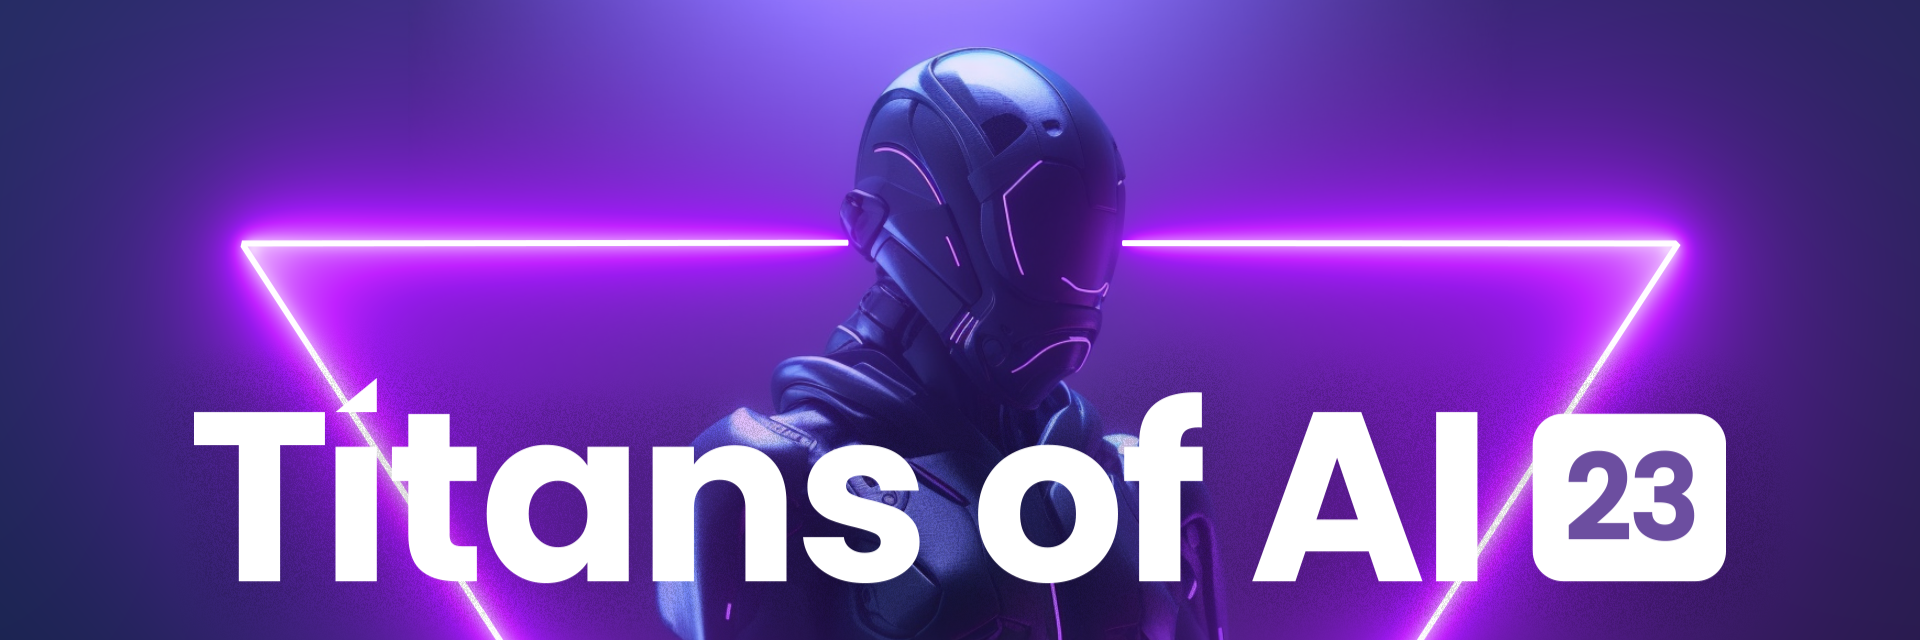 Titans of AI | Chicago